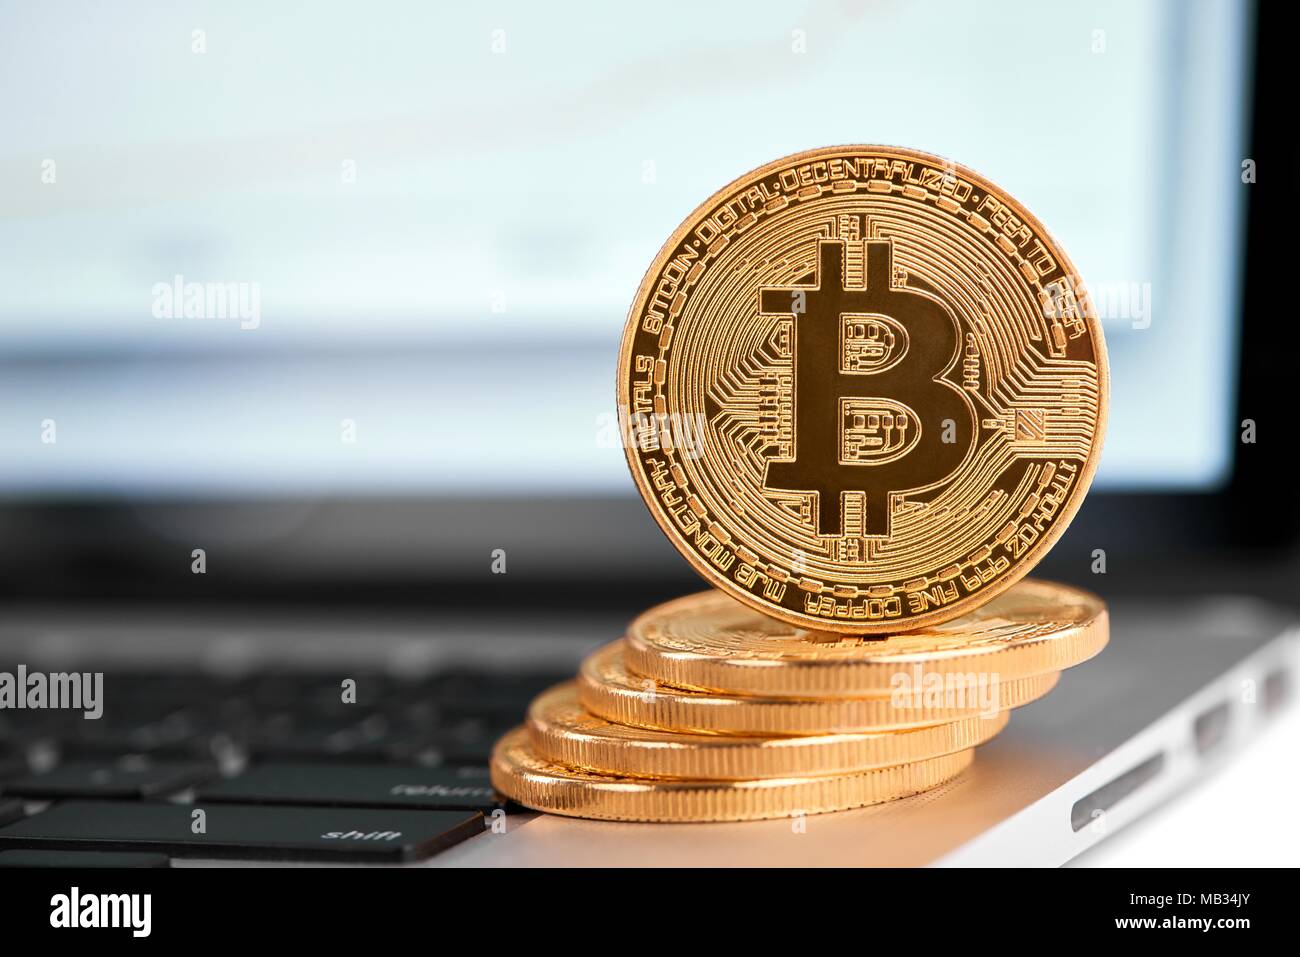 Pile de bitcoins en or avec un bitcoin sur son bord debout sur un ordinateur portable d'argent. Cryptocurrency argent numérique virtuelle blockchain monnaie électronique web tendances futures arrière-plan flou Banque D'Images